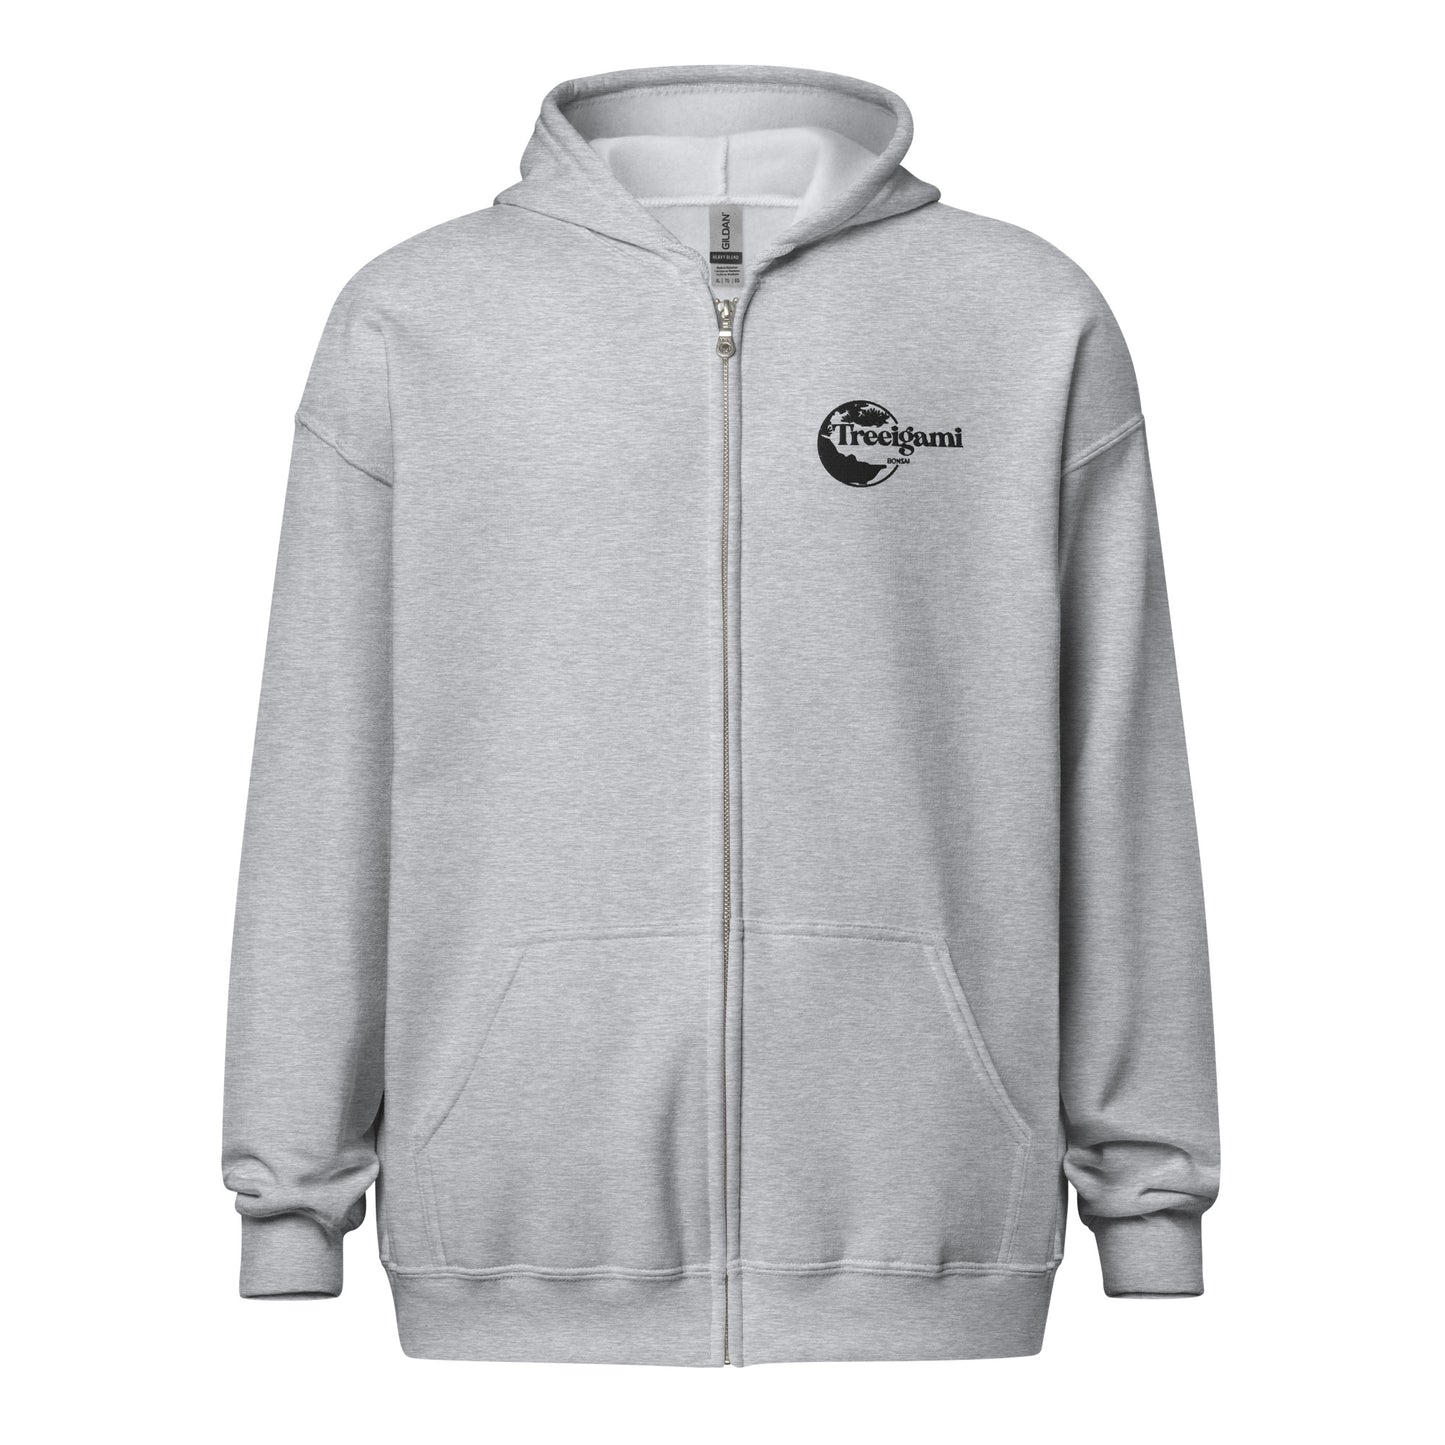 Treeigami Unisex heavy blend zip hoodie - Black Embordered Logo